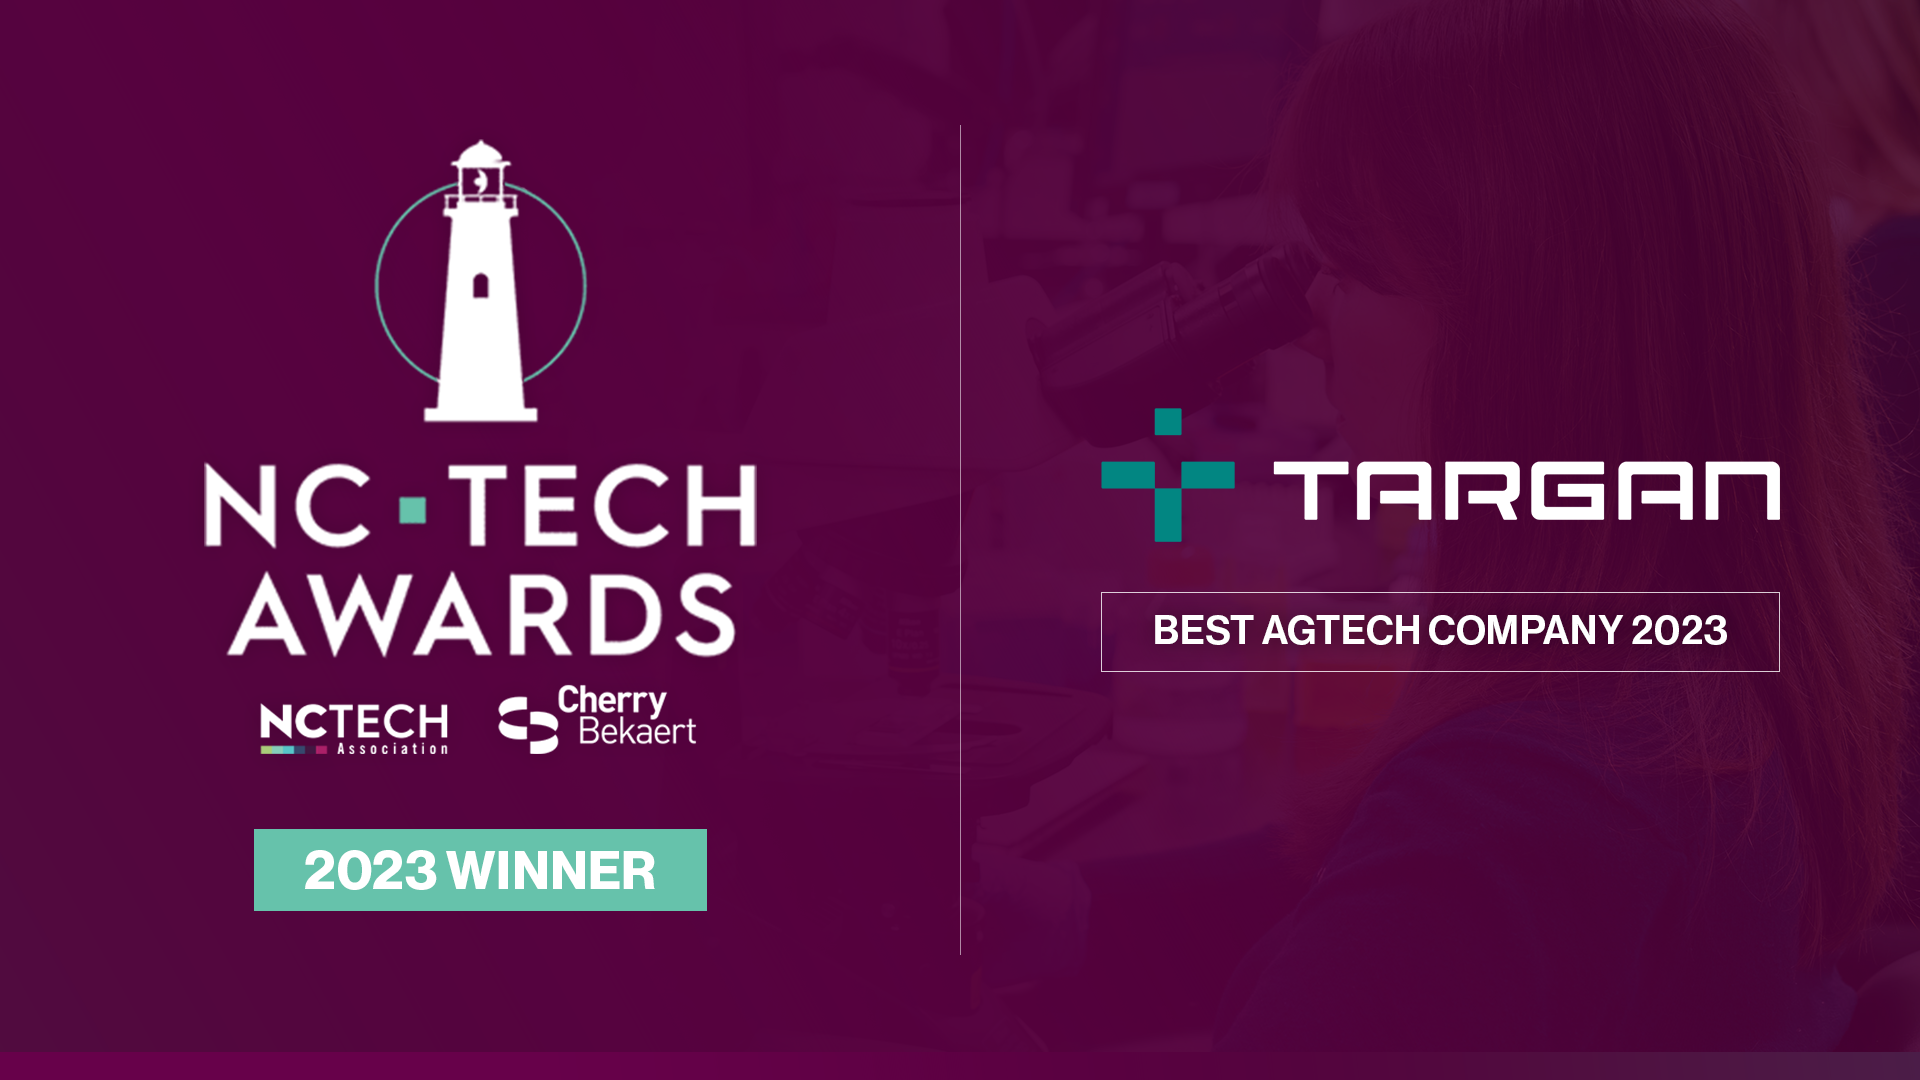 TARGAN Wins AgTech Award at 2023 NC Tech Awards